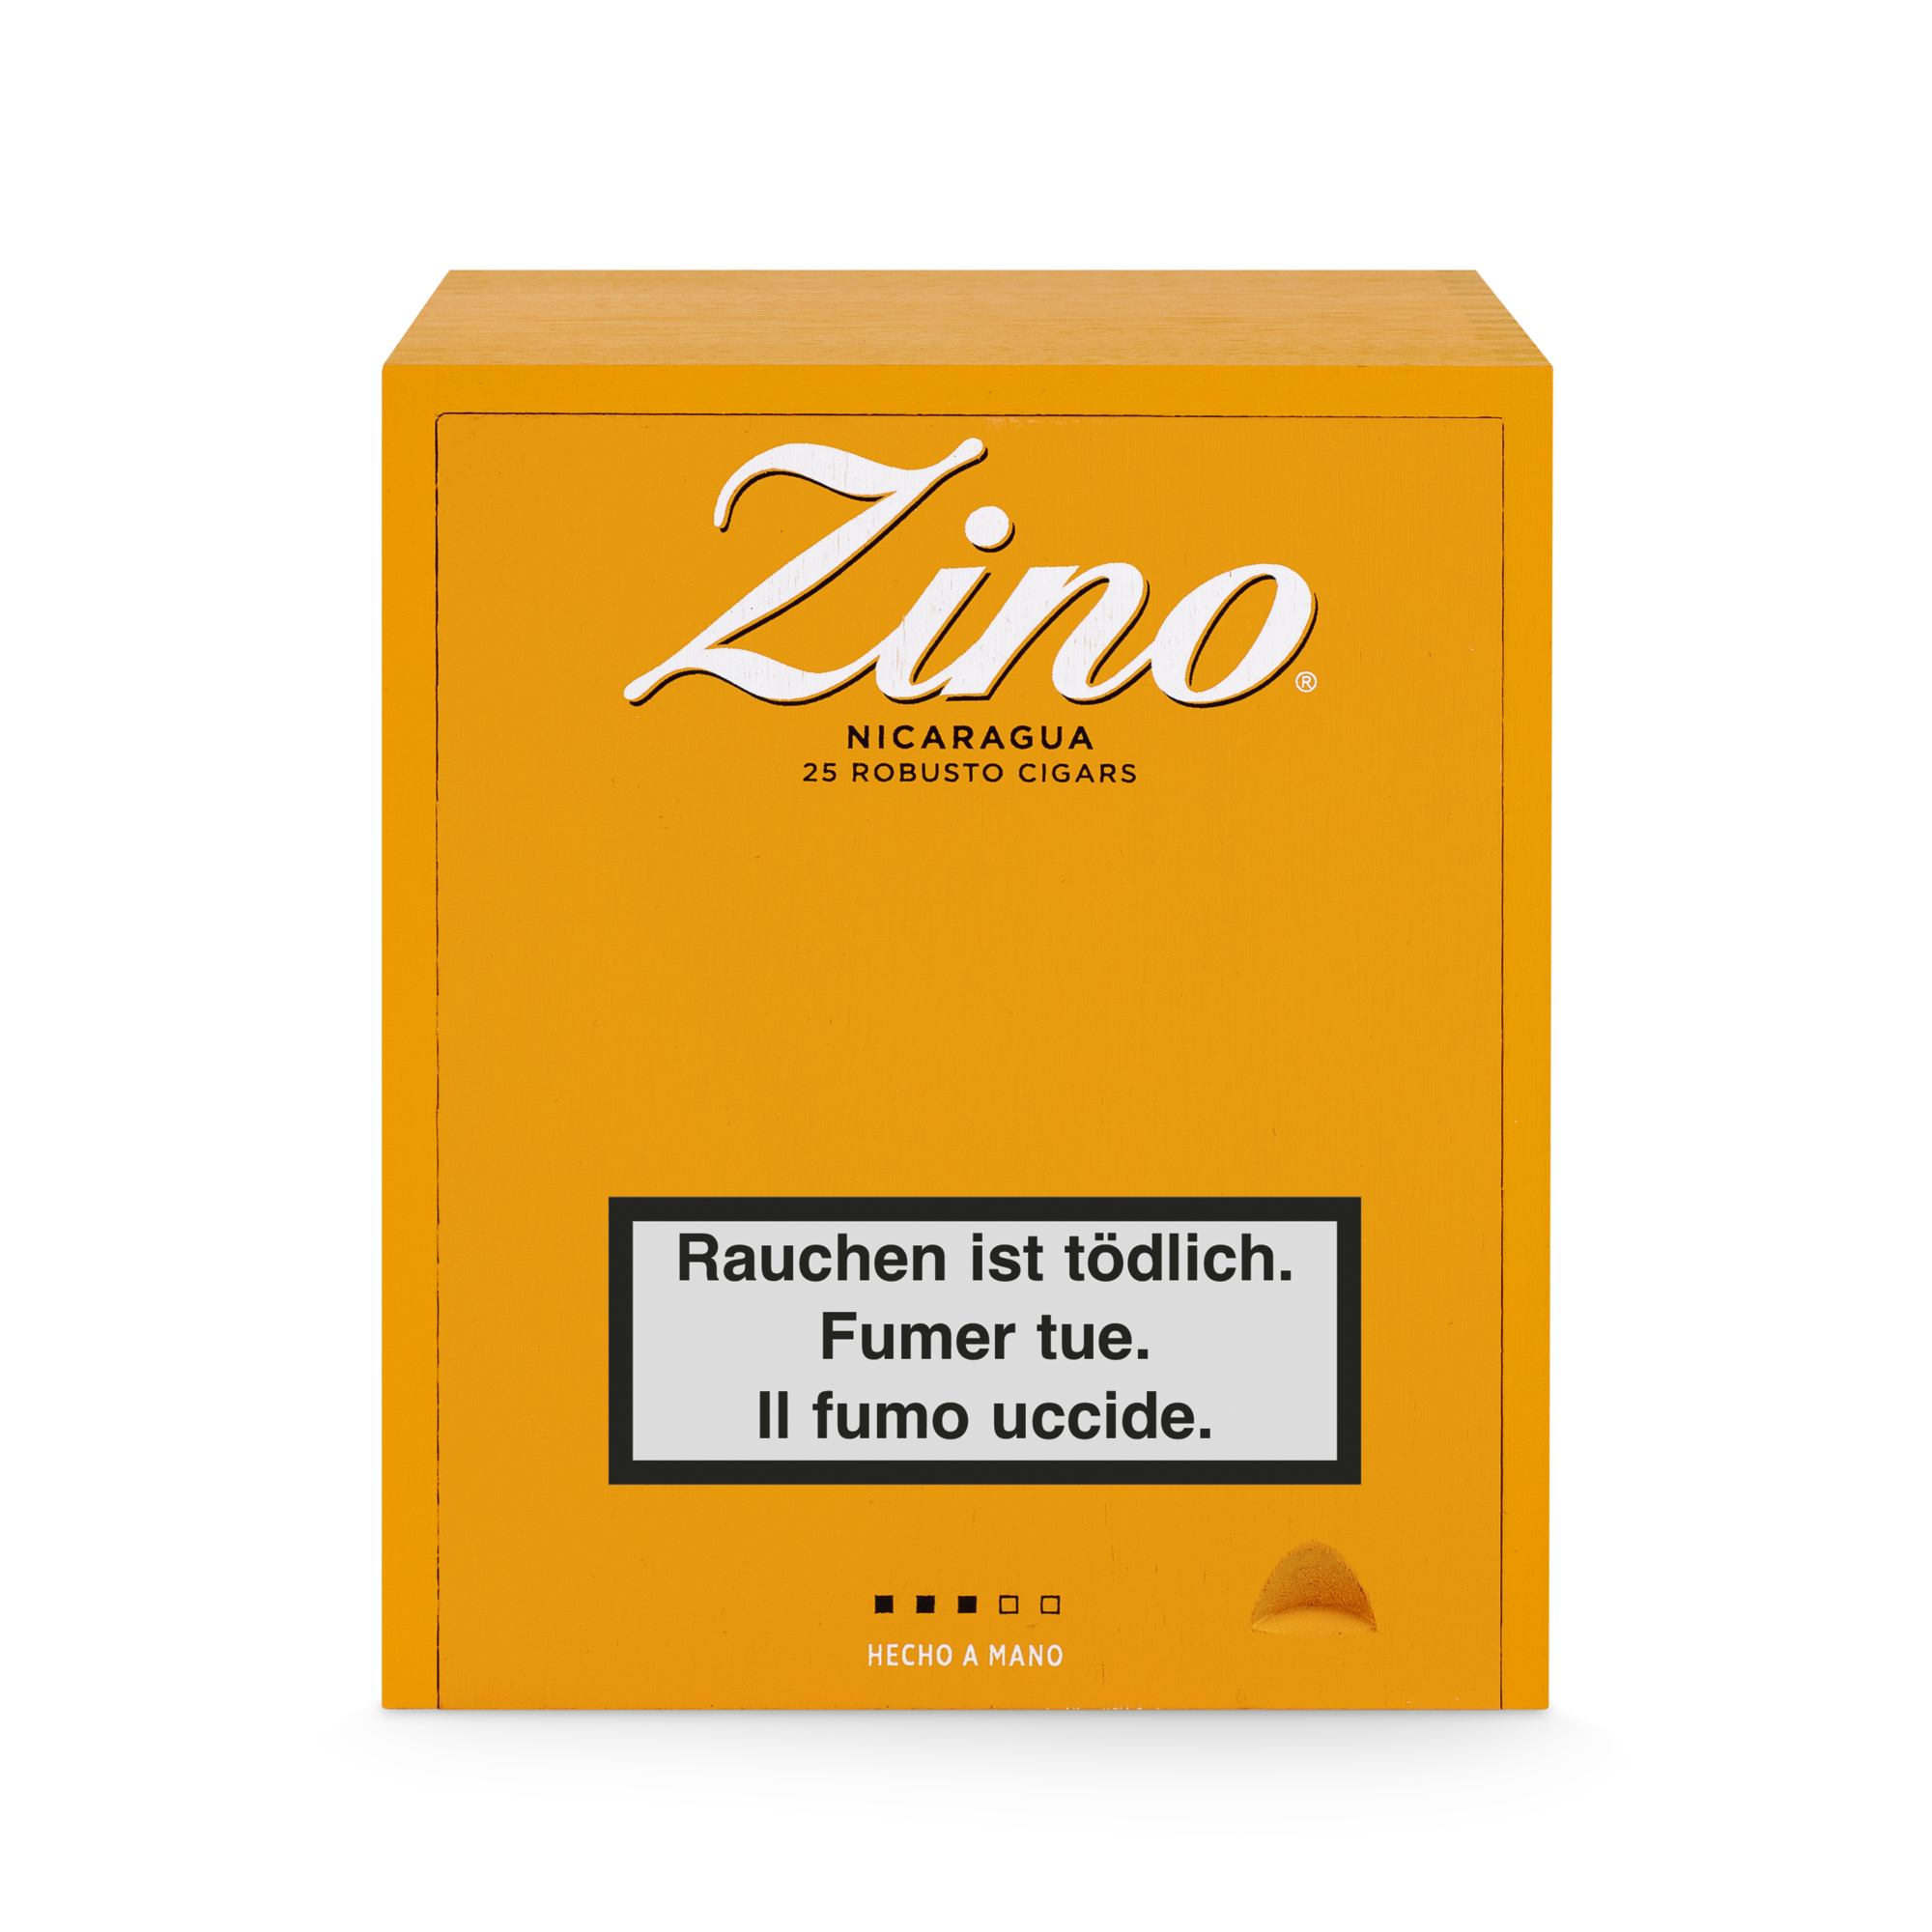 Zino Nicaragua Robusto Zigarre 25er Box geschlossen von oben